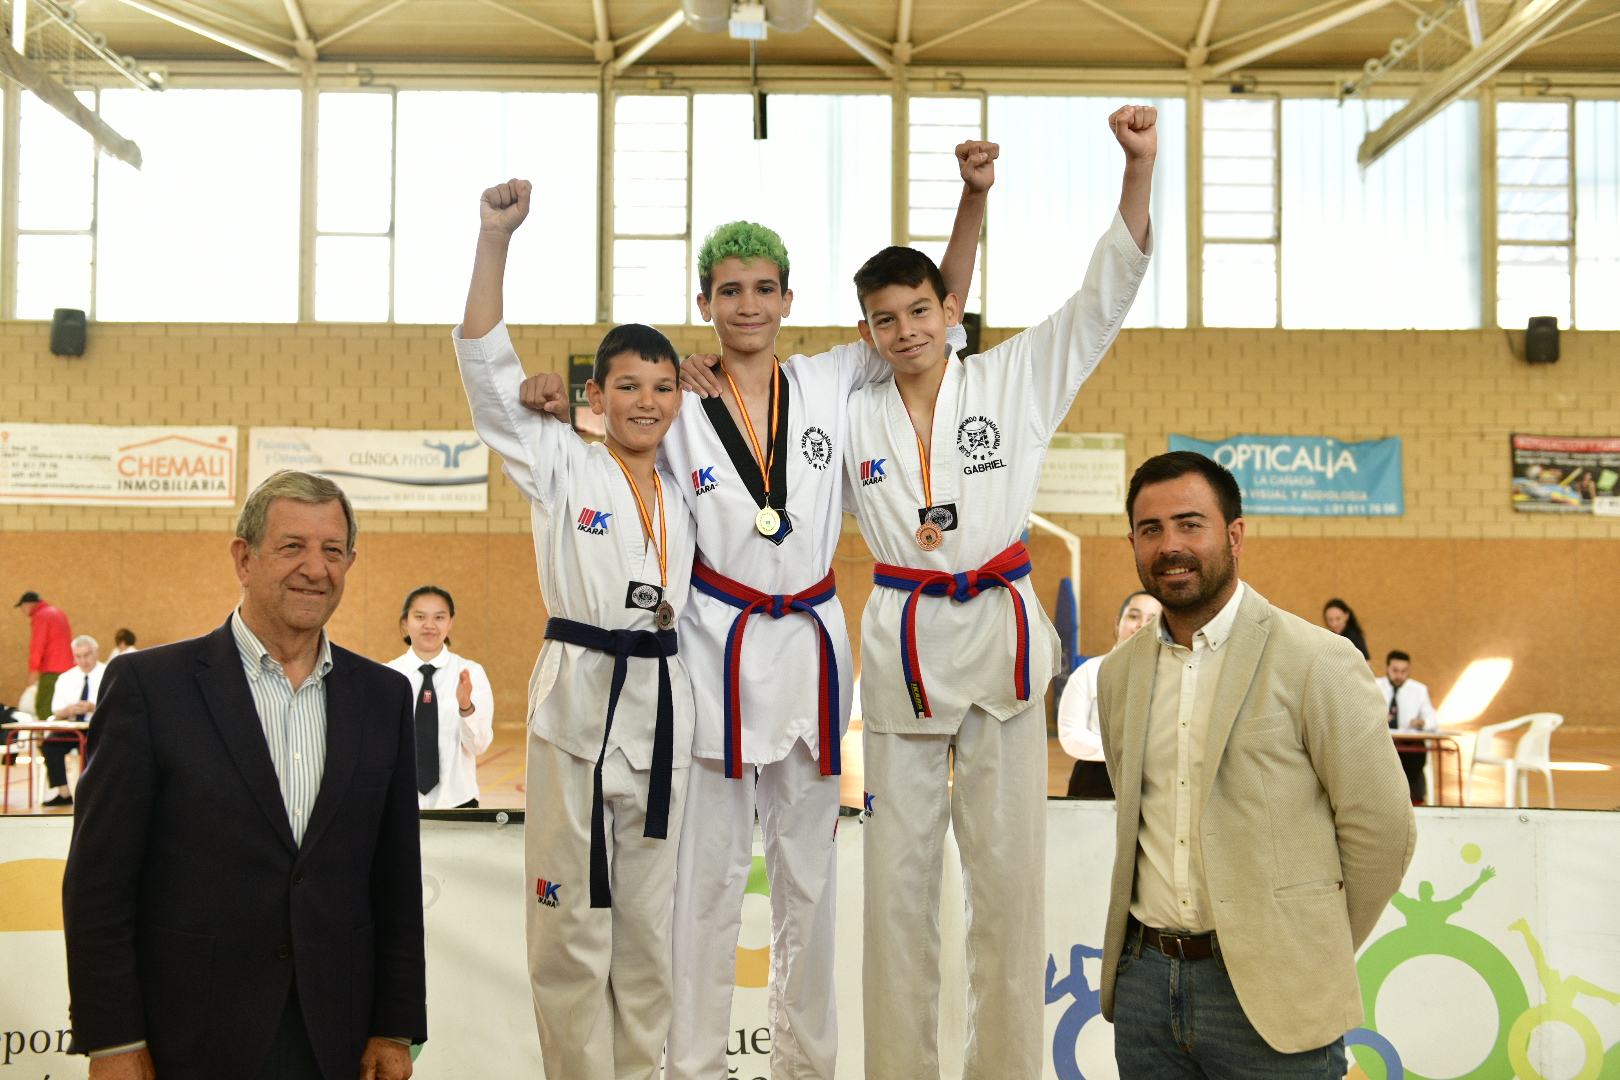 El alcalde, Luis Partida, y el concejal de Deportes, Ignacio González, junto a los participantes del Campeonato de Taekwondo.